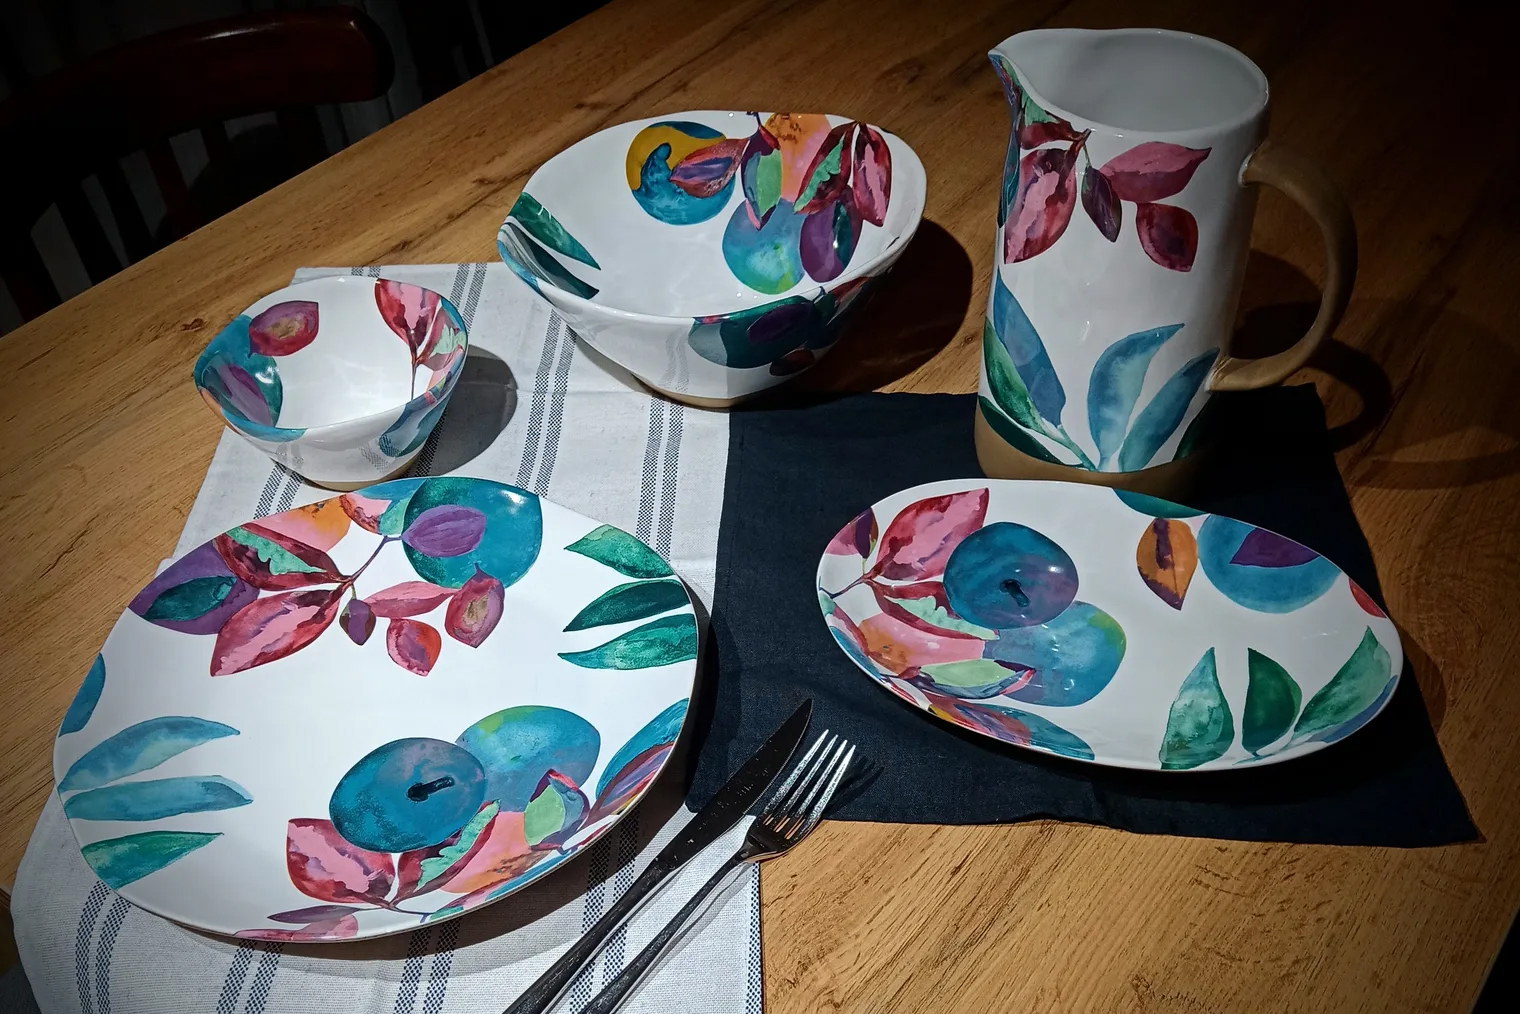 Я выбрала пять видов посуды: салатники в двух объемах, большие круглые тарелки, овальные тарелки поменьше и кувшин